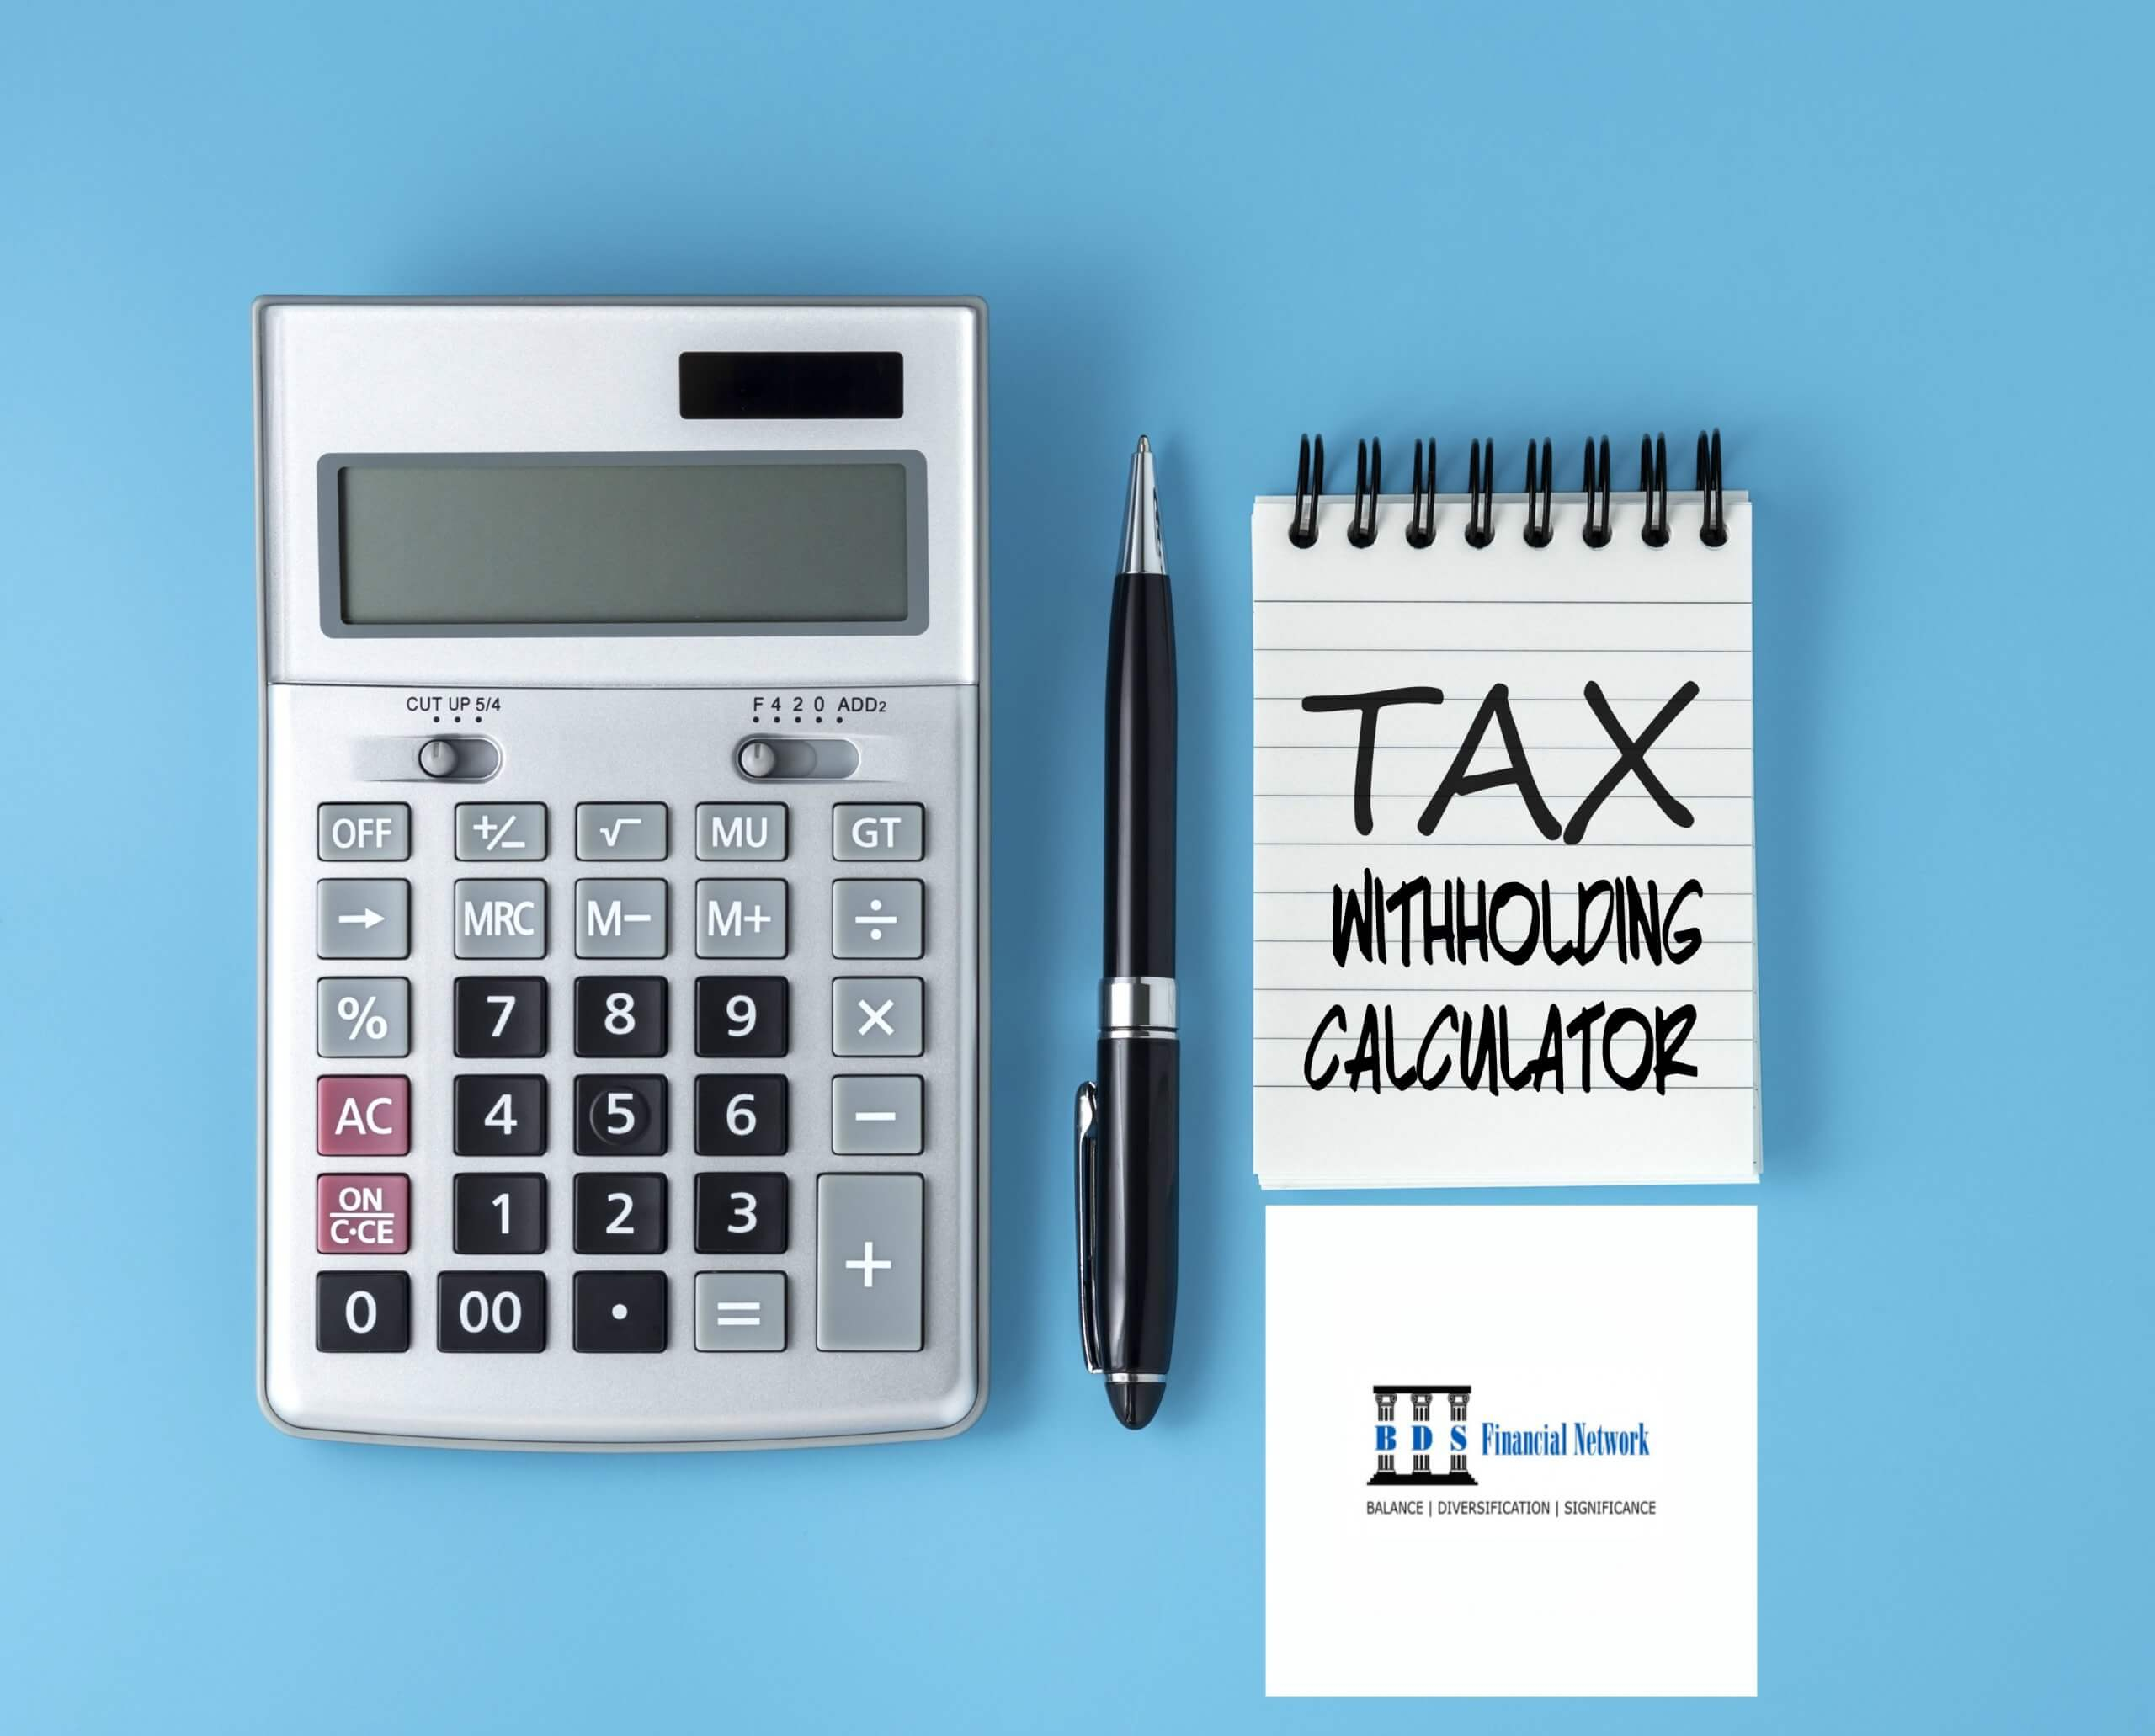 IRS Tax Estimator